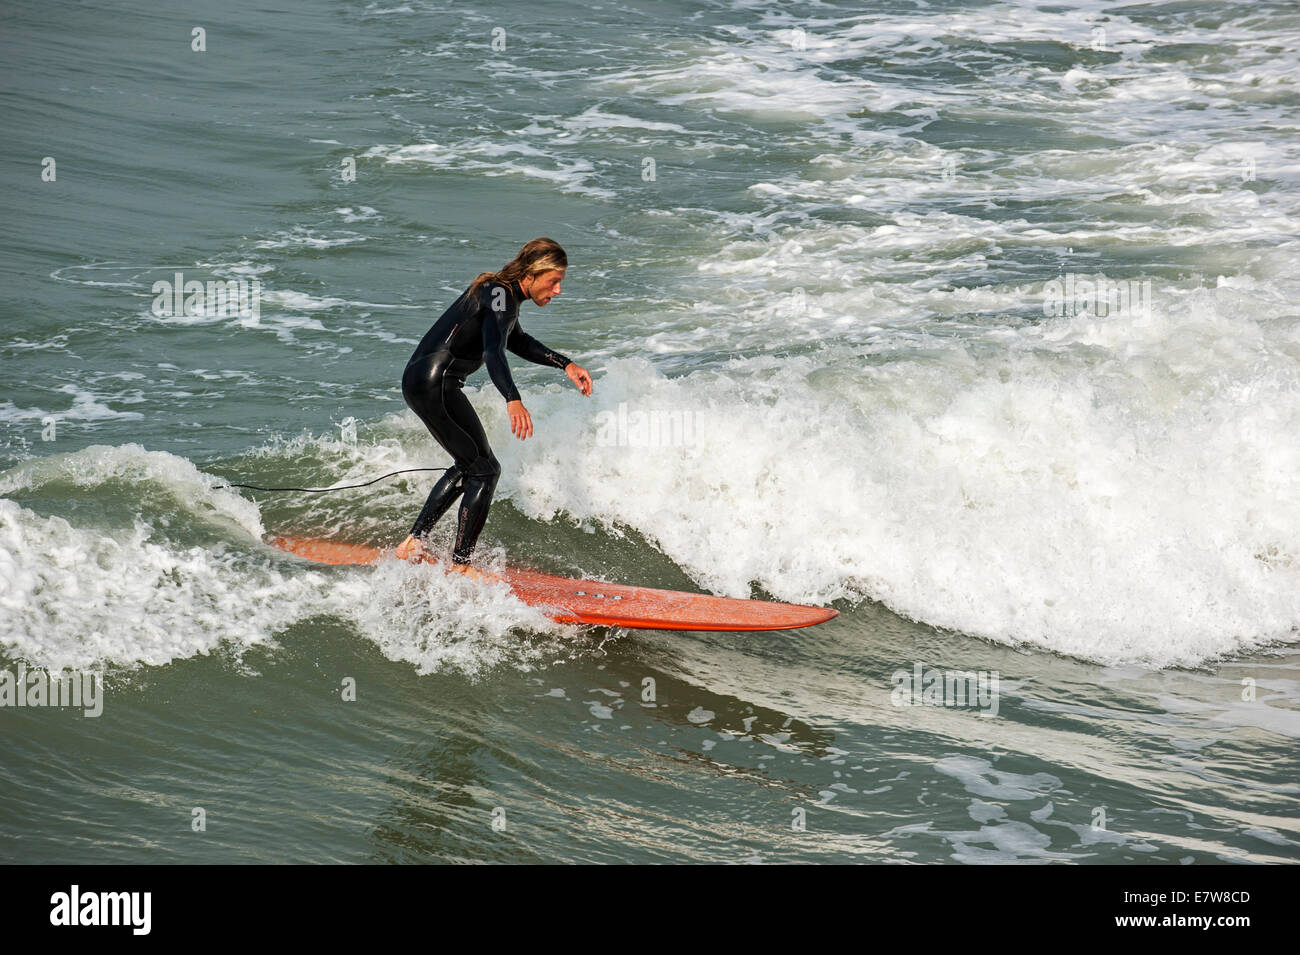 Surfer im schwarzen Anzug auf Surfbrett Welle zu reiten, wie es auf See bricht Stockfoto